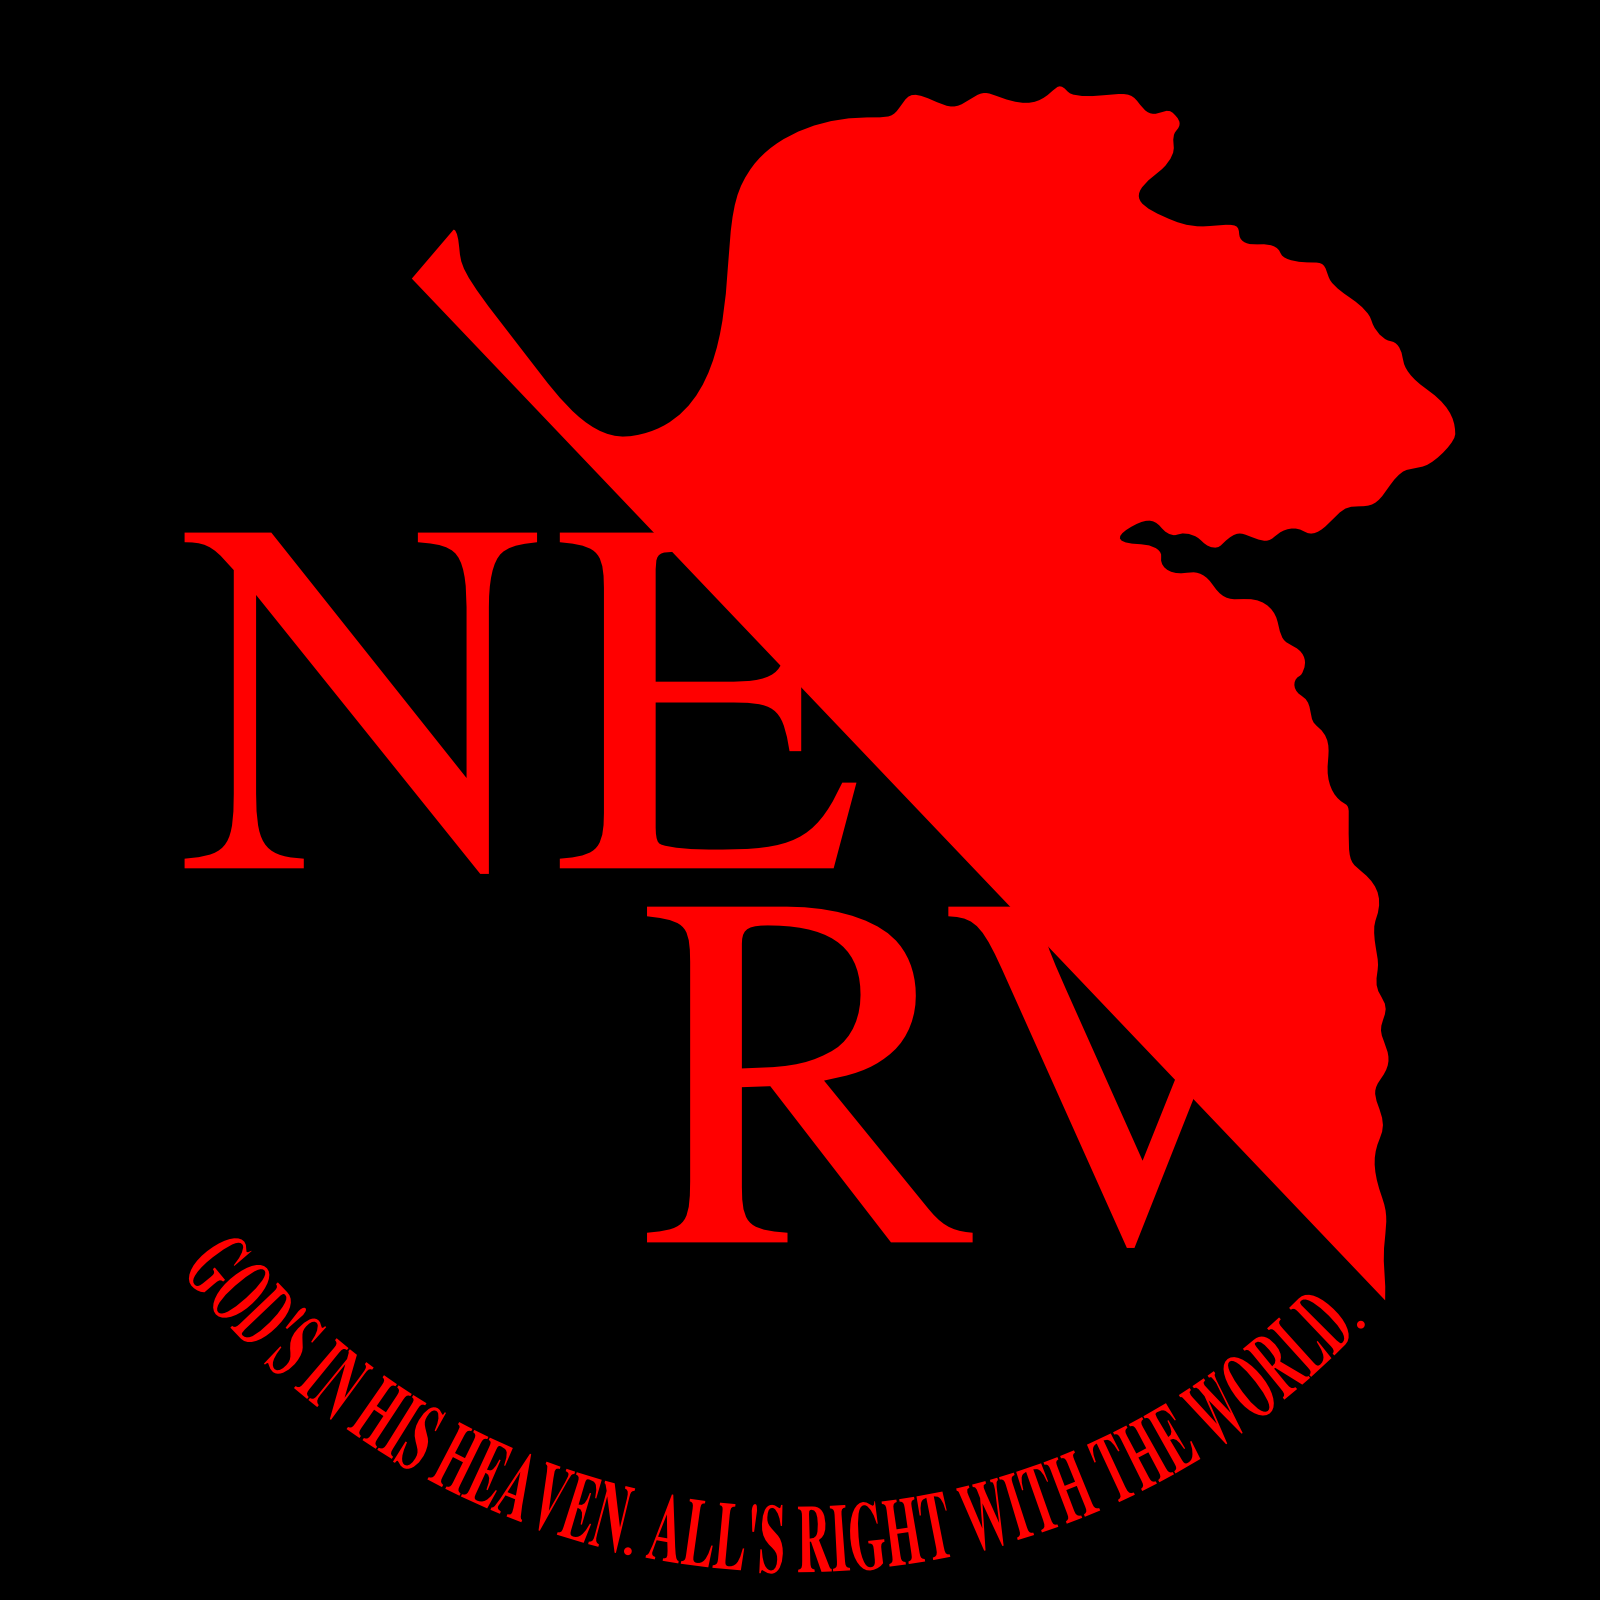 nerv-evangelion-wiki-fandom